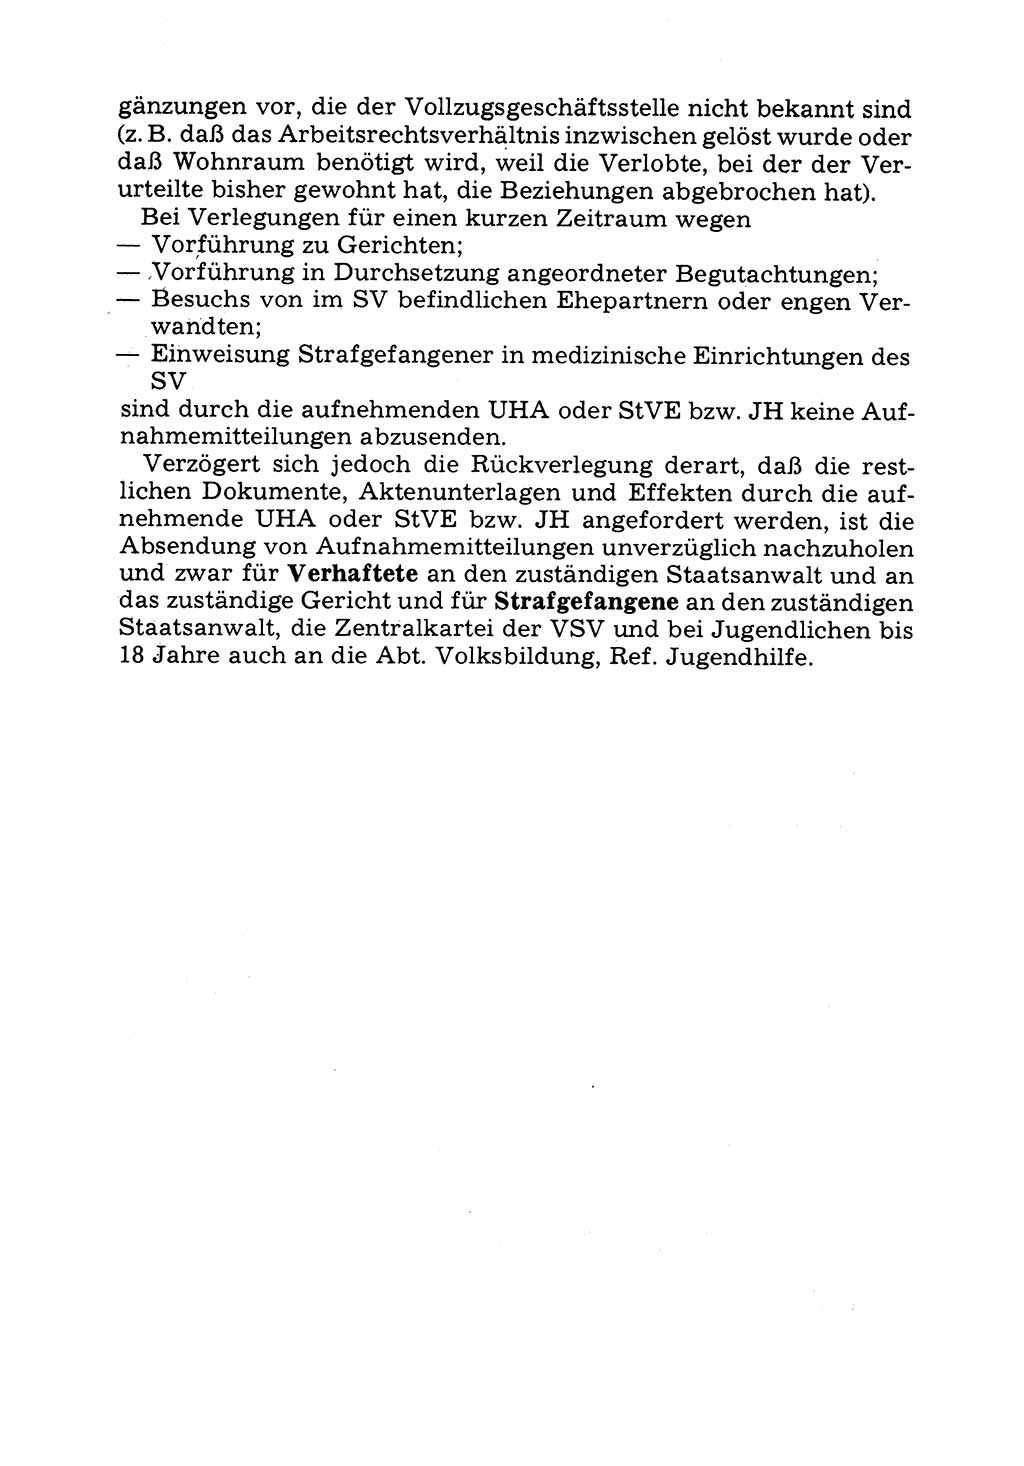 Verwaltungsmäßige Aufgaben beim Vollzug der Untersuchungshaft (U-Haft) sowie der Strafen mit Freiheitsentzug (SV) [Deutsche Demokratische Republik (DDR)] 1980, Seite 94 (Aufg. Vollz. U-Haft SV DDR 1980, S. 94)